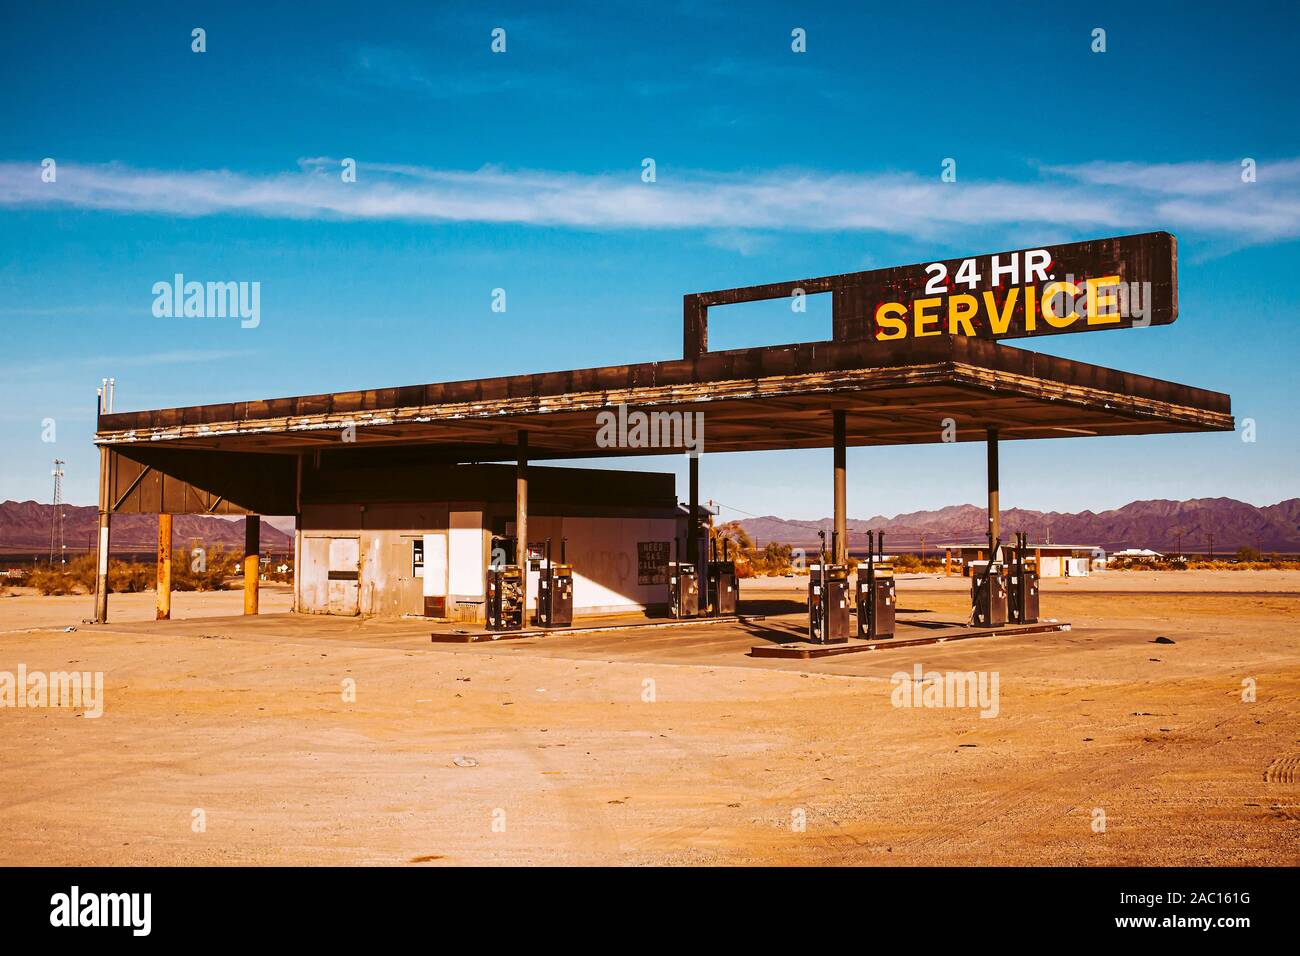 Abbandonata la stazione di gas con la lettura del segno "24 Ore di servizio" con look vintage nel deserto contro il cielo blu e nuvole,, Foto Stock